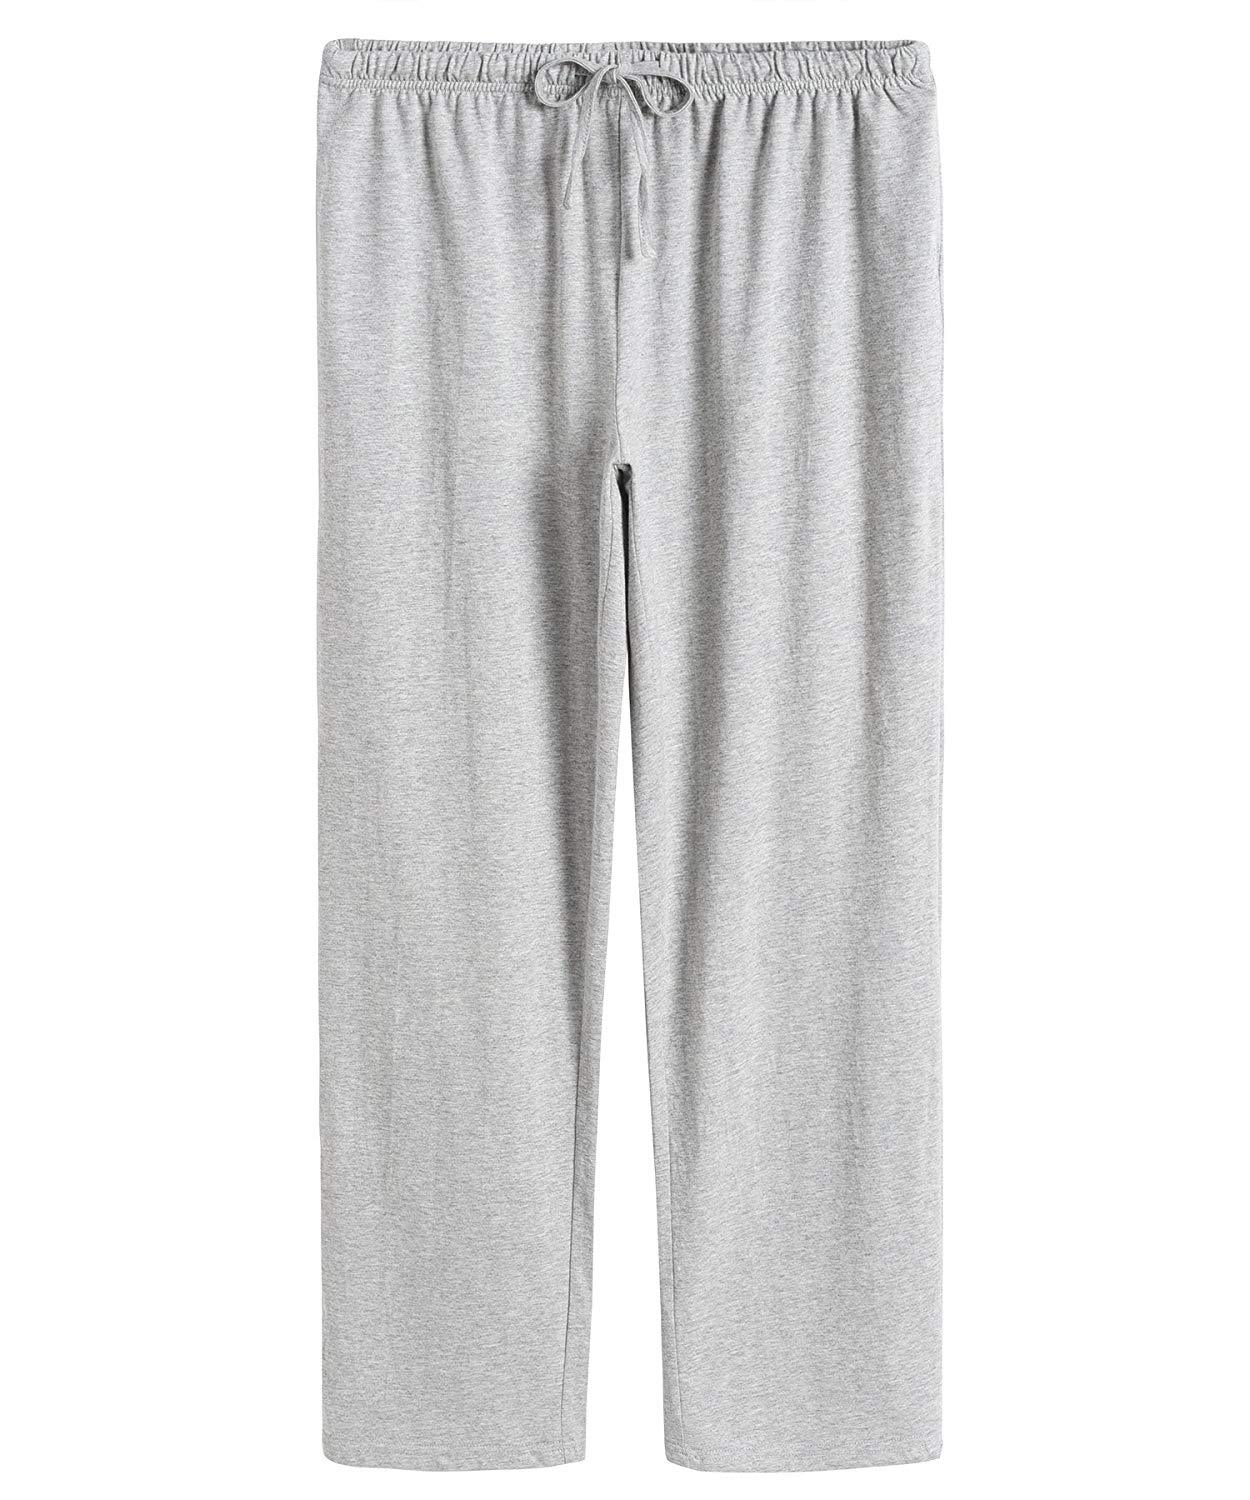 Women’s Cotton Pajama Pants - Latuza